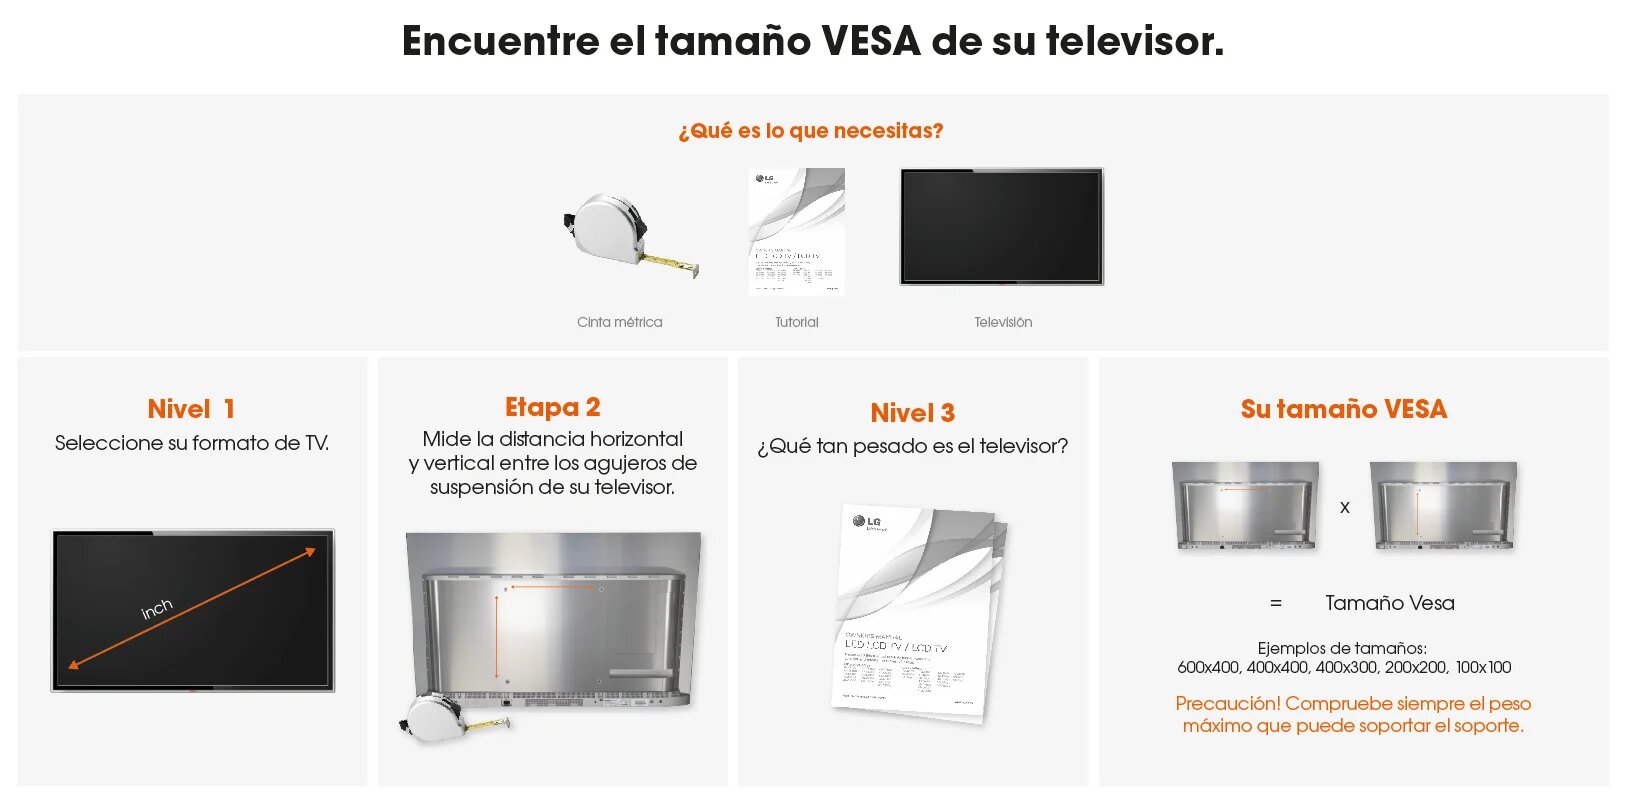 Qué soporte VESA es el adecuado para tu TV? Encuentra tu VESA aquí.